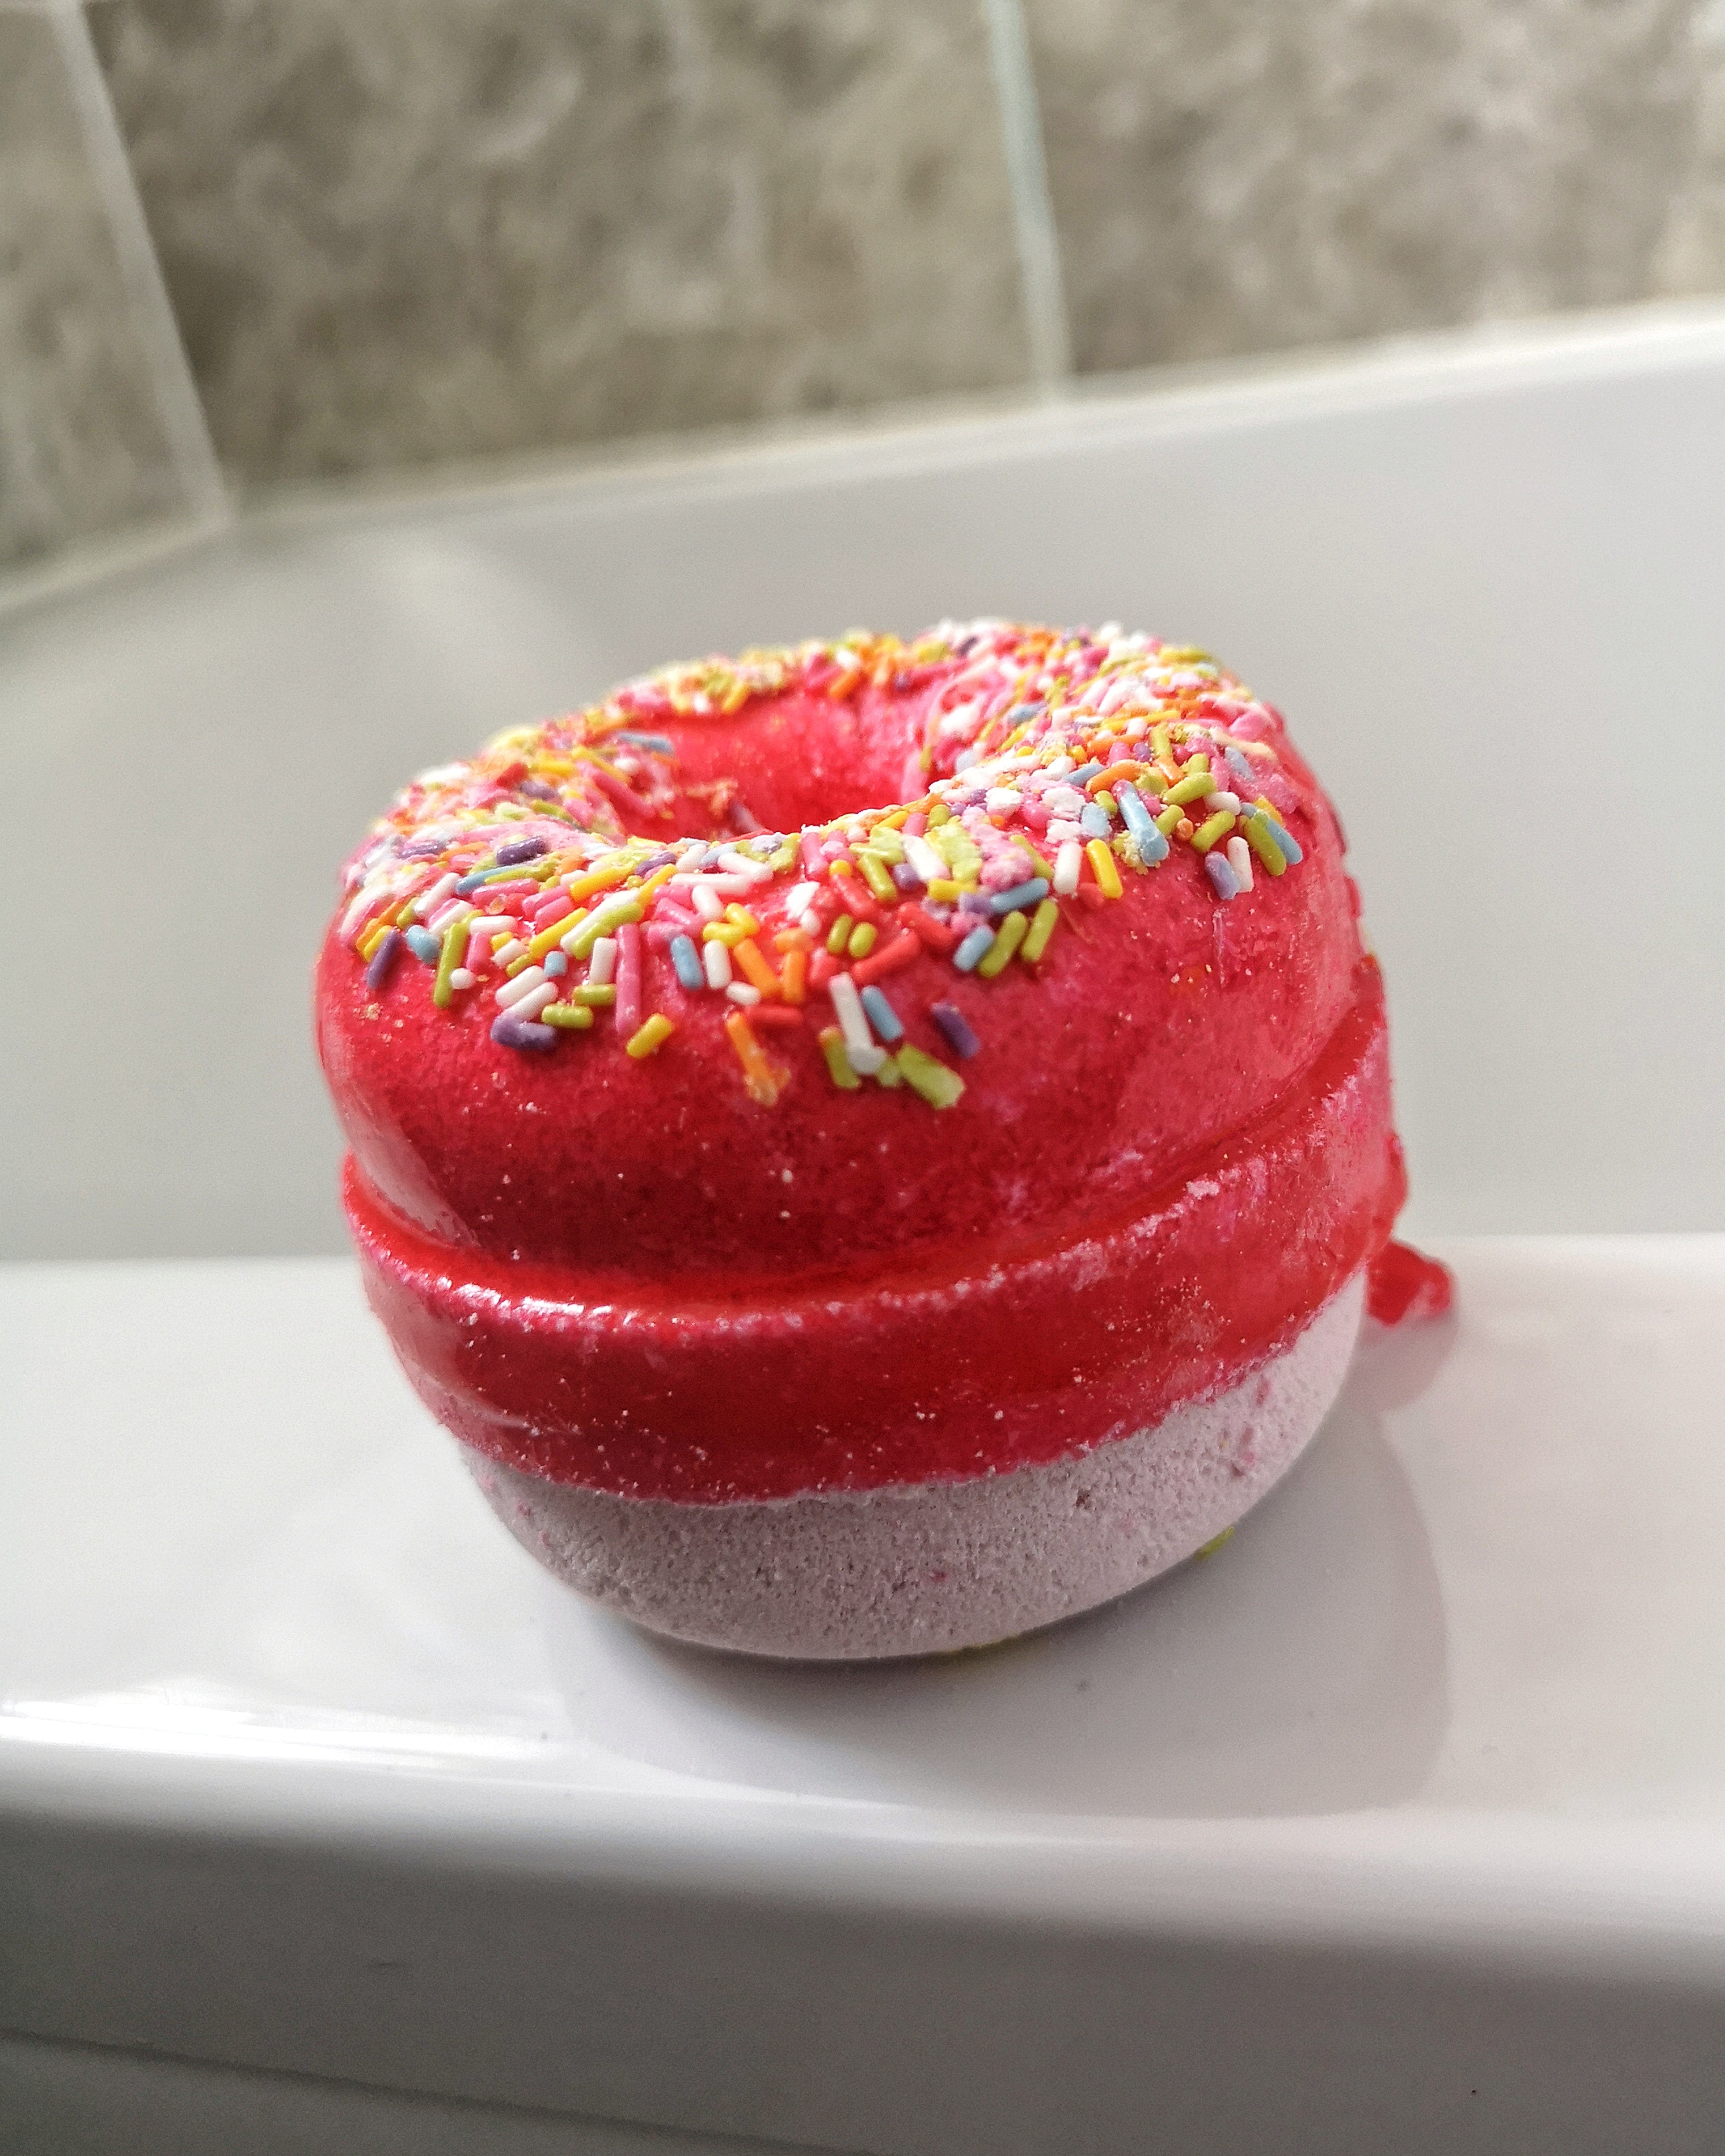 Strawberry & banana donut bath bombs